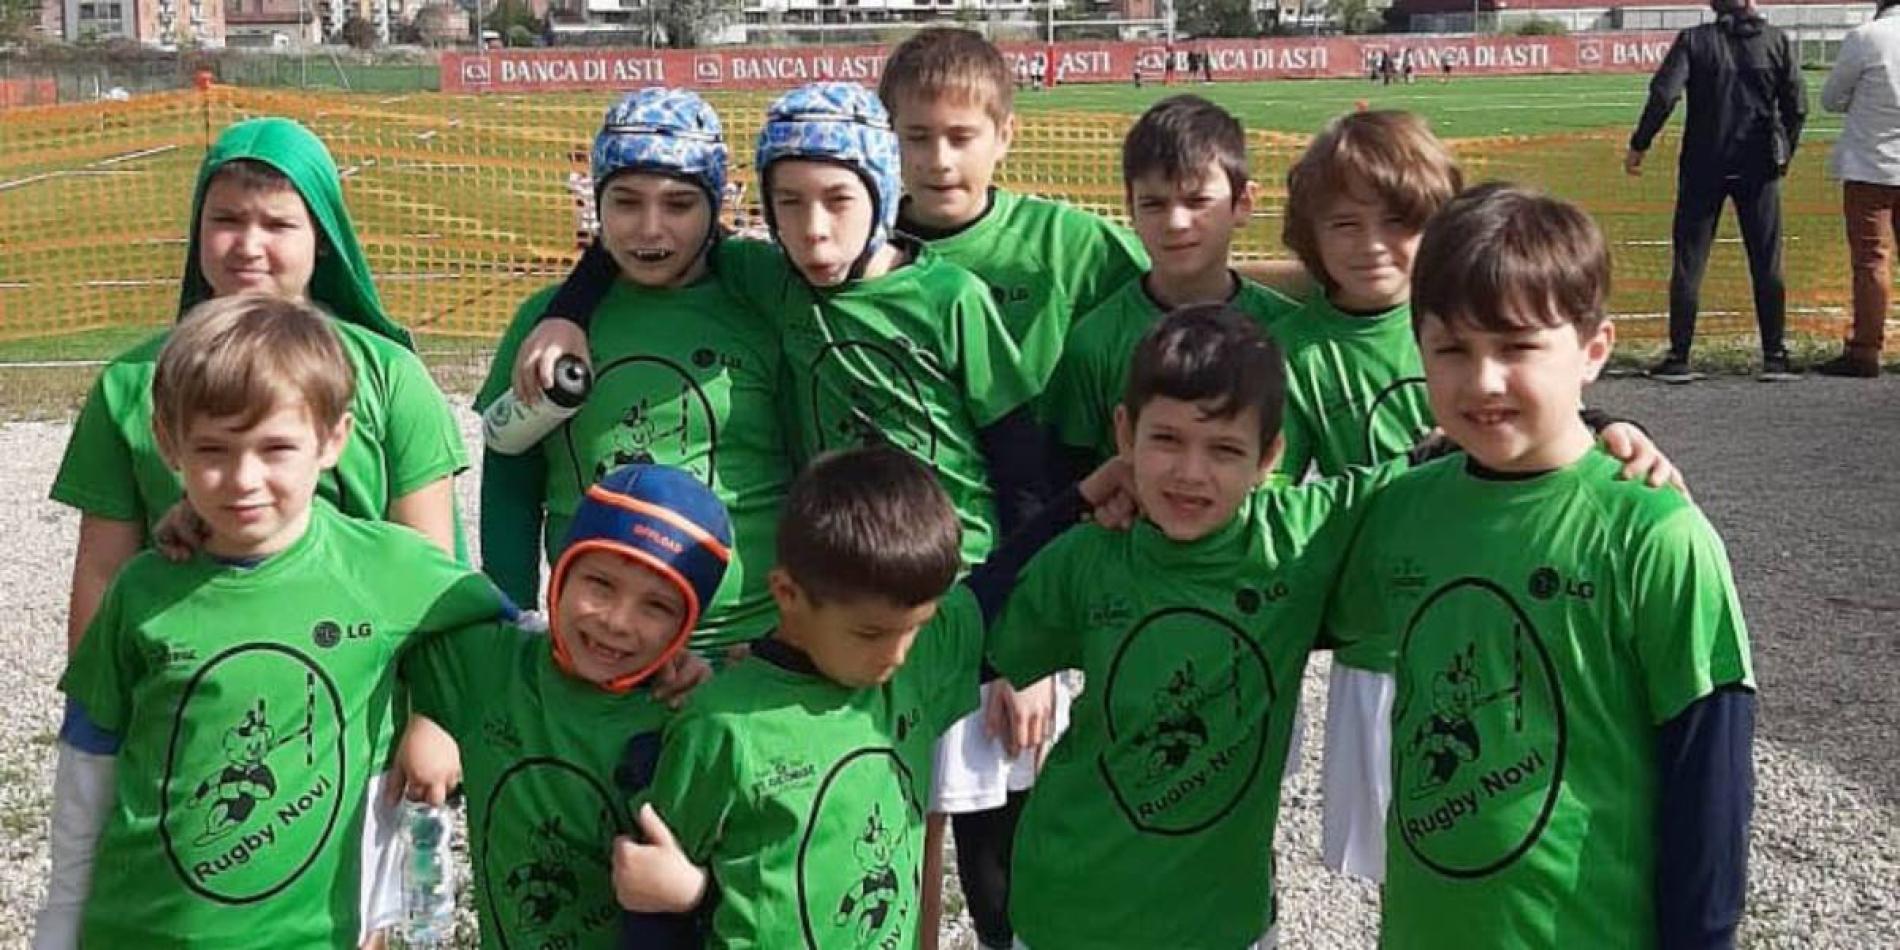 Rugby, la provincia fa squadra: 6 team per far crescere i giovani